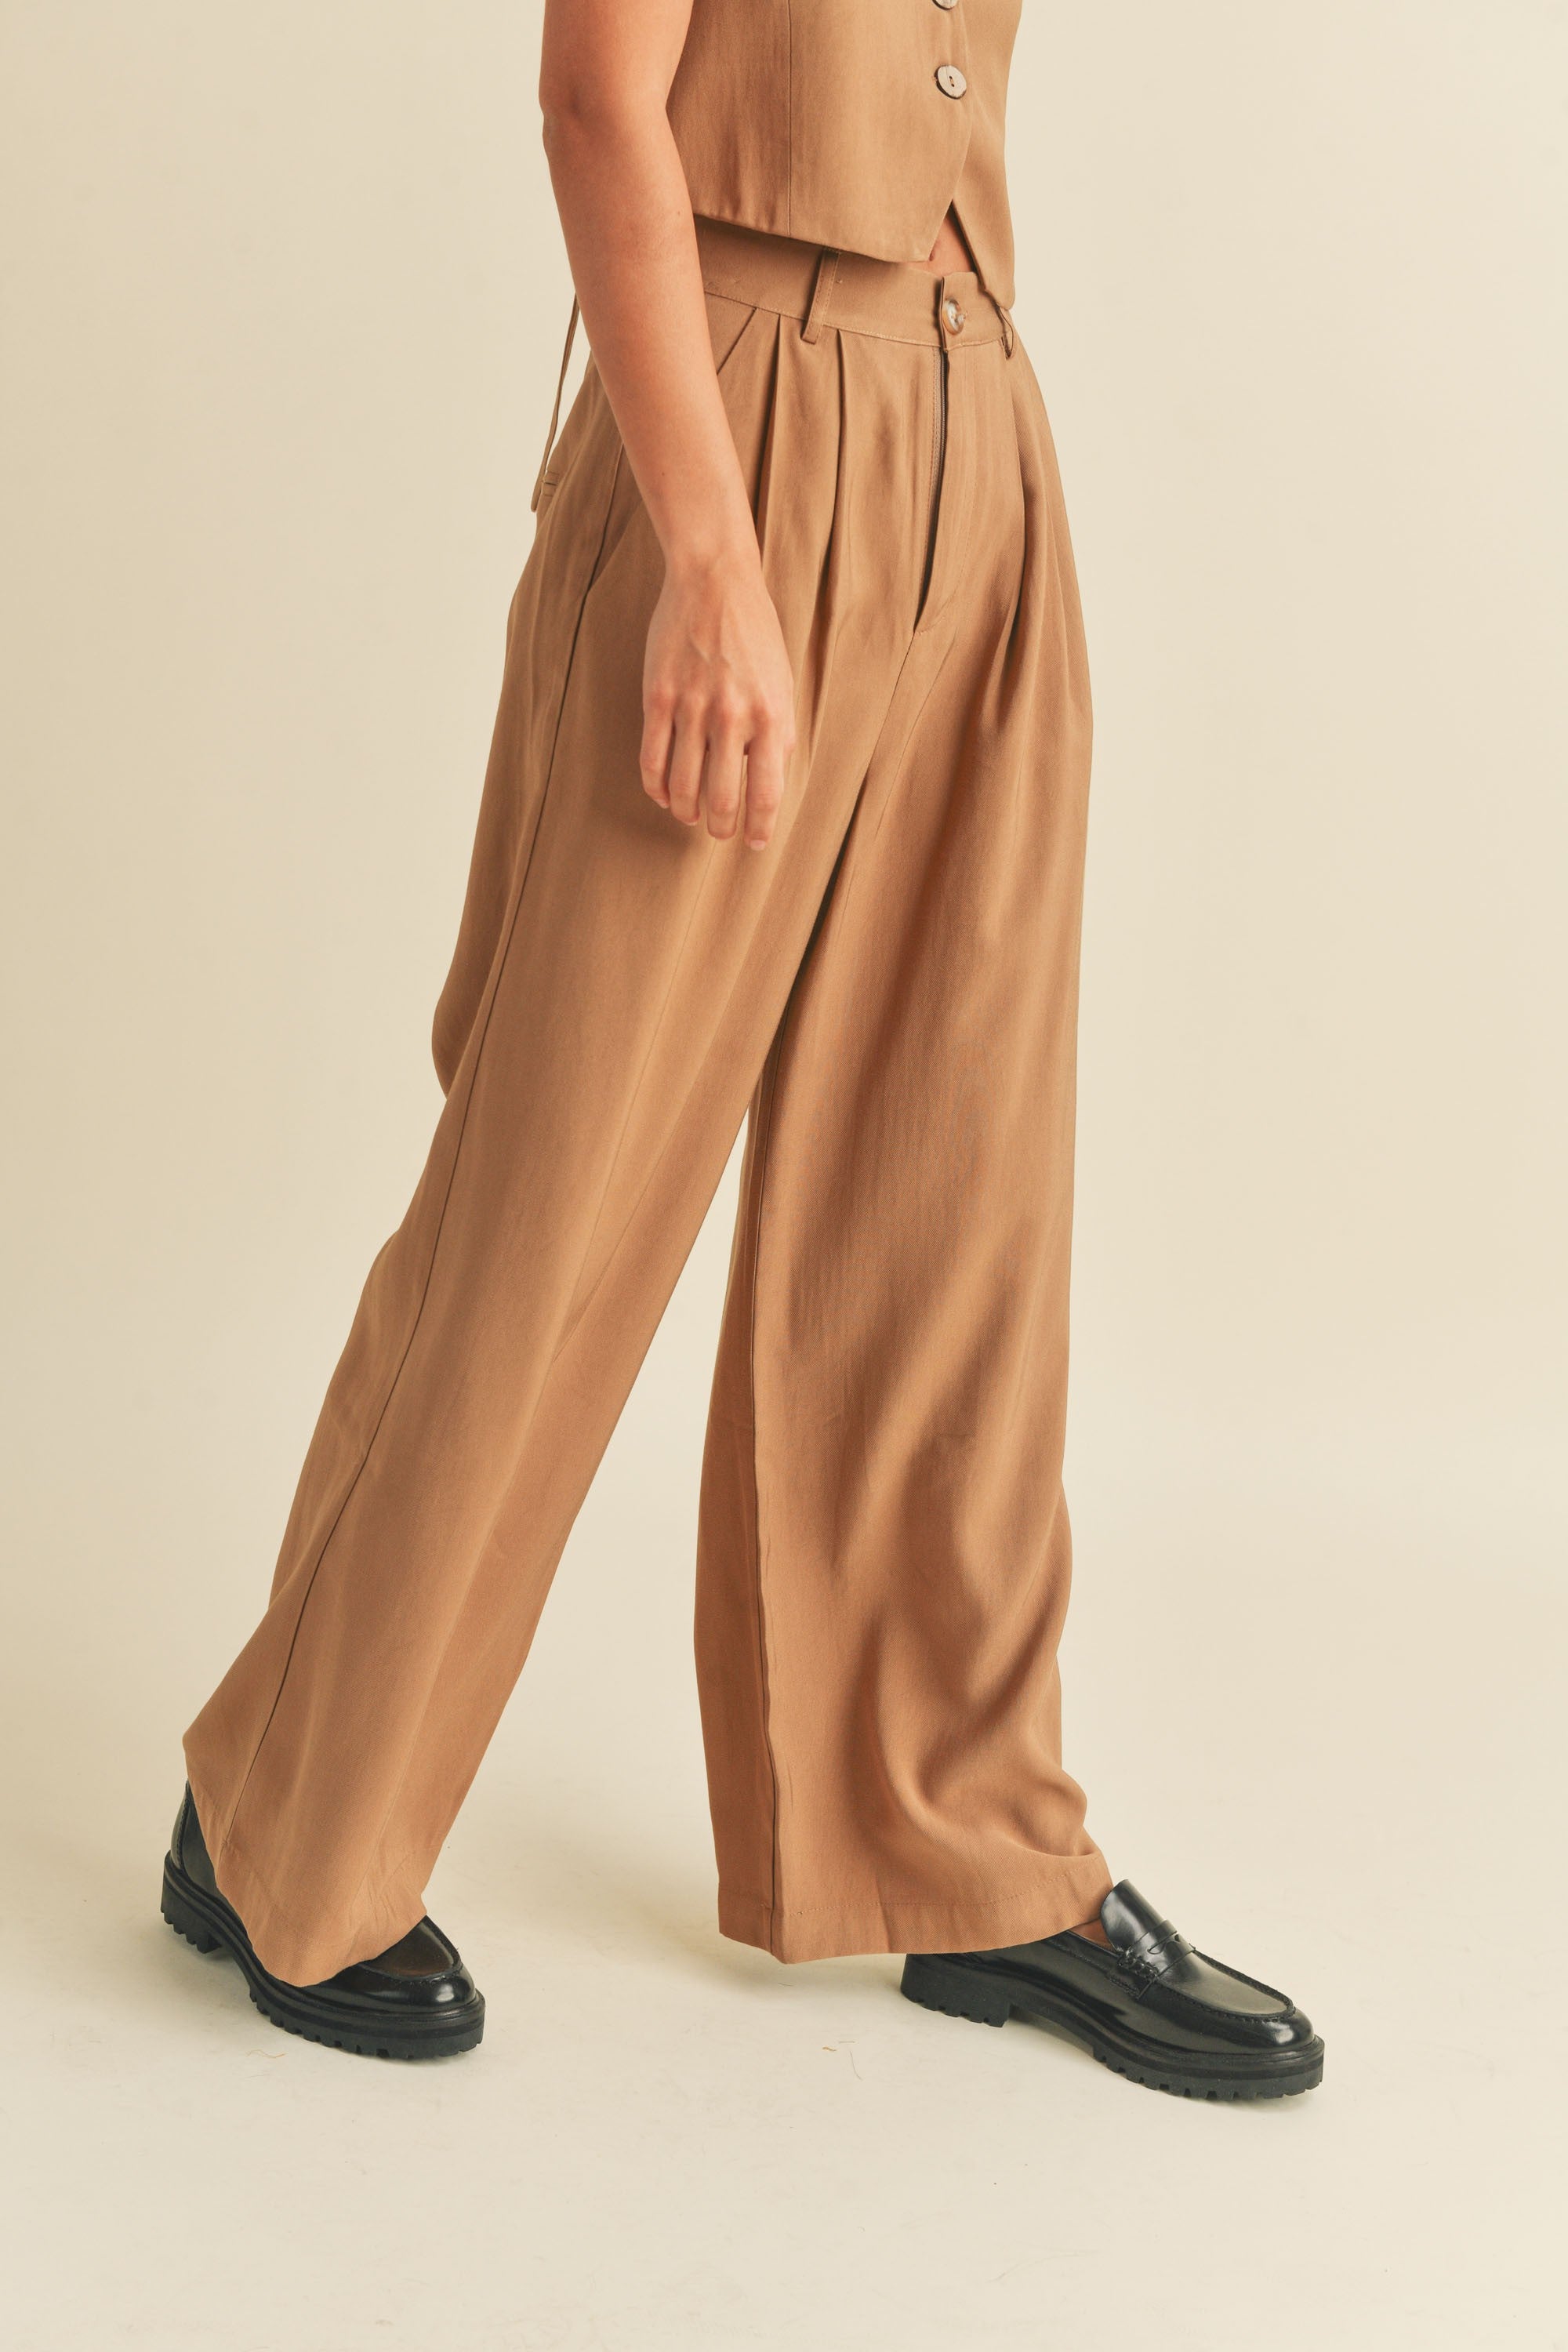 The Rumi Linen Vest + Pants Set - Sold Separately